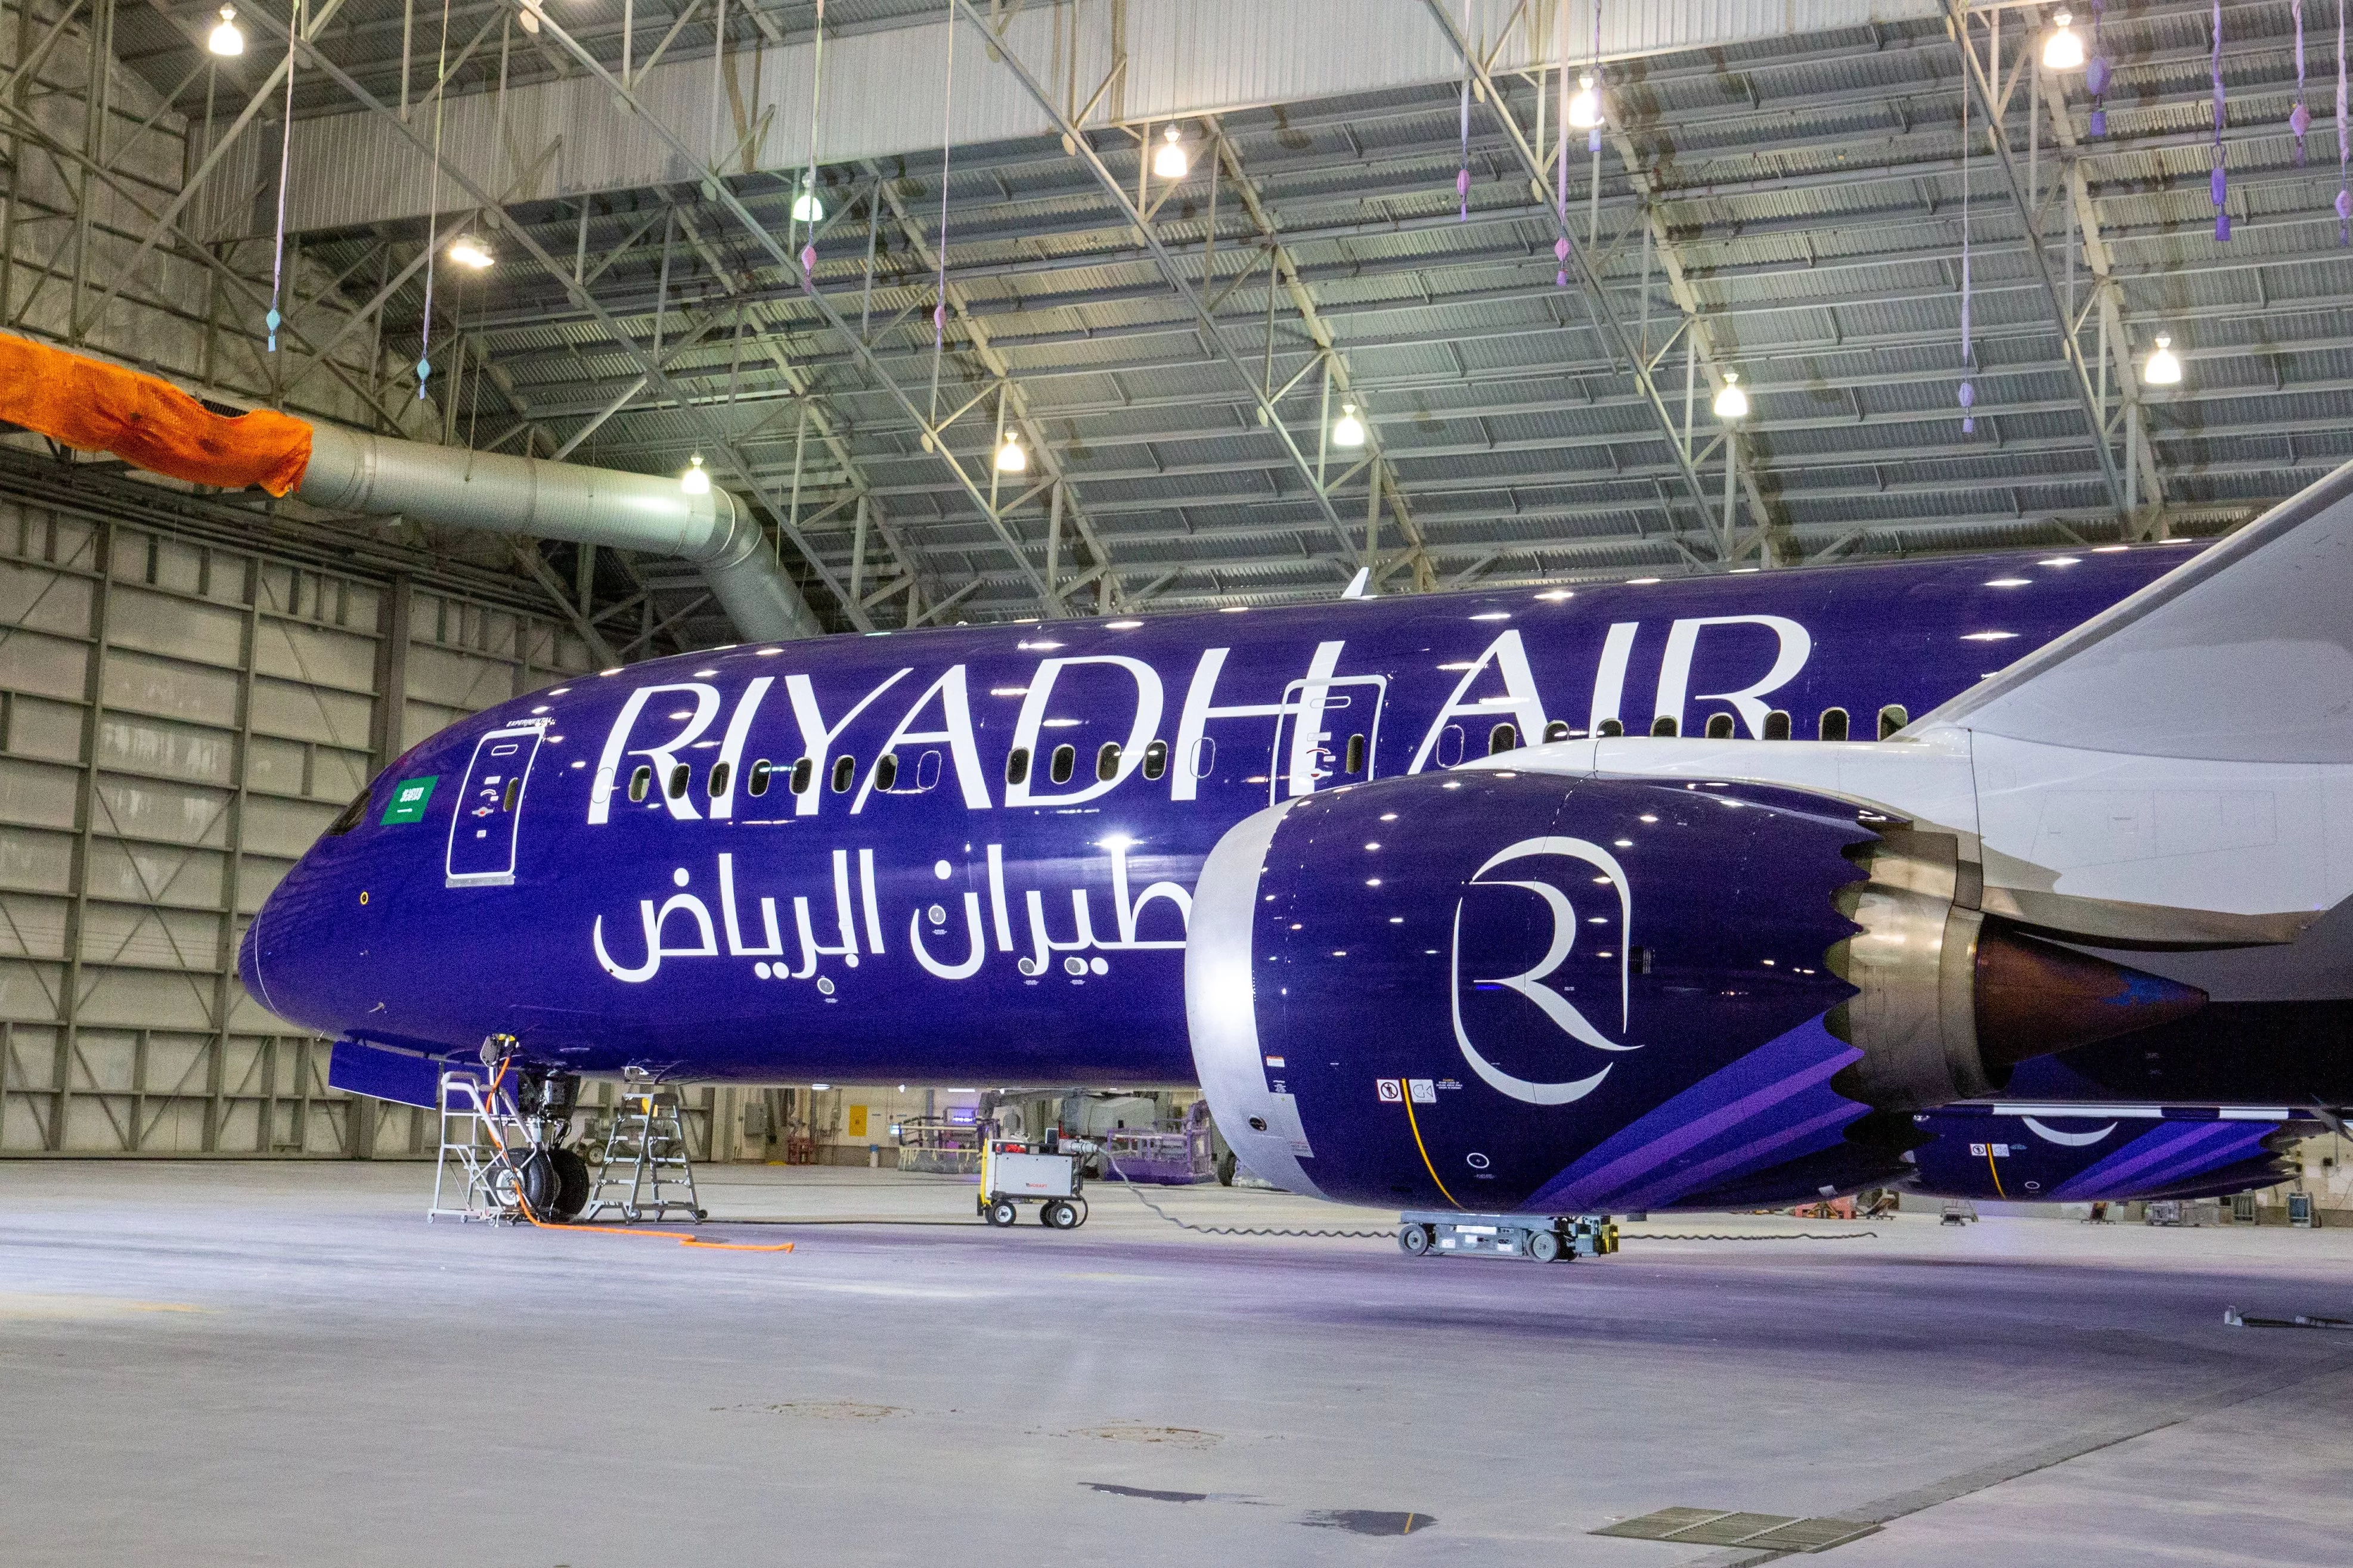 طيران الرياض يكشف عن أسطوله الرسمي: مزيج بين التقنيات الرقمية والأناقة العصرية